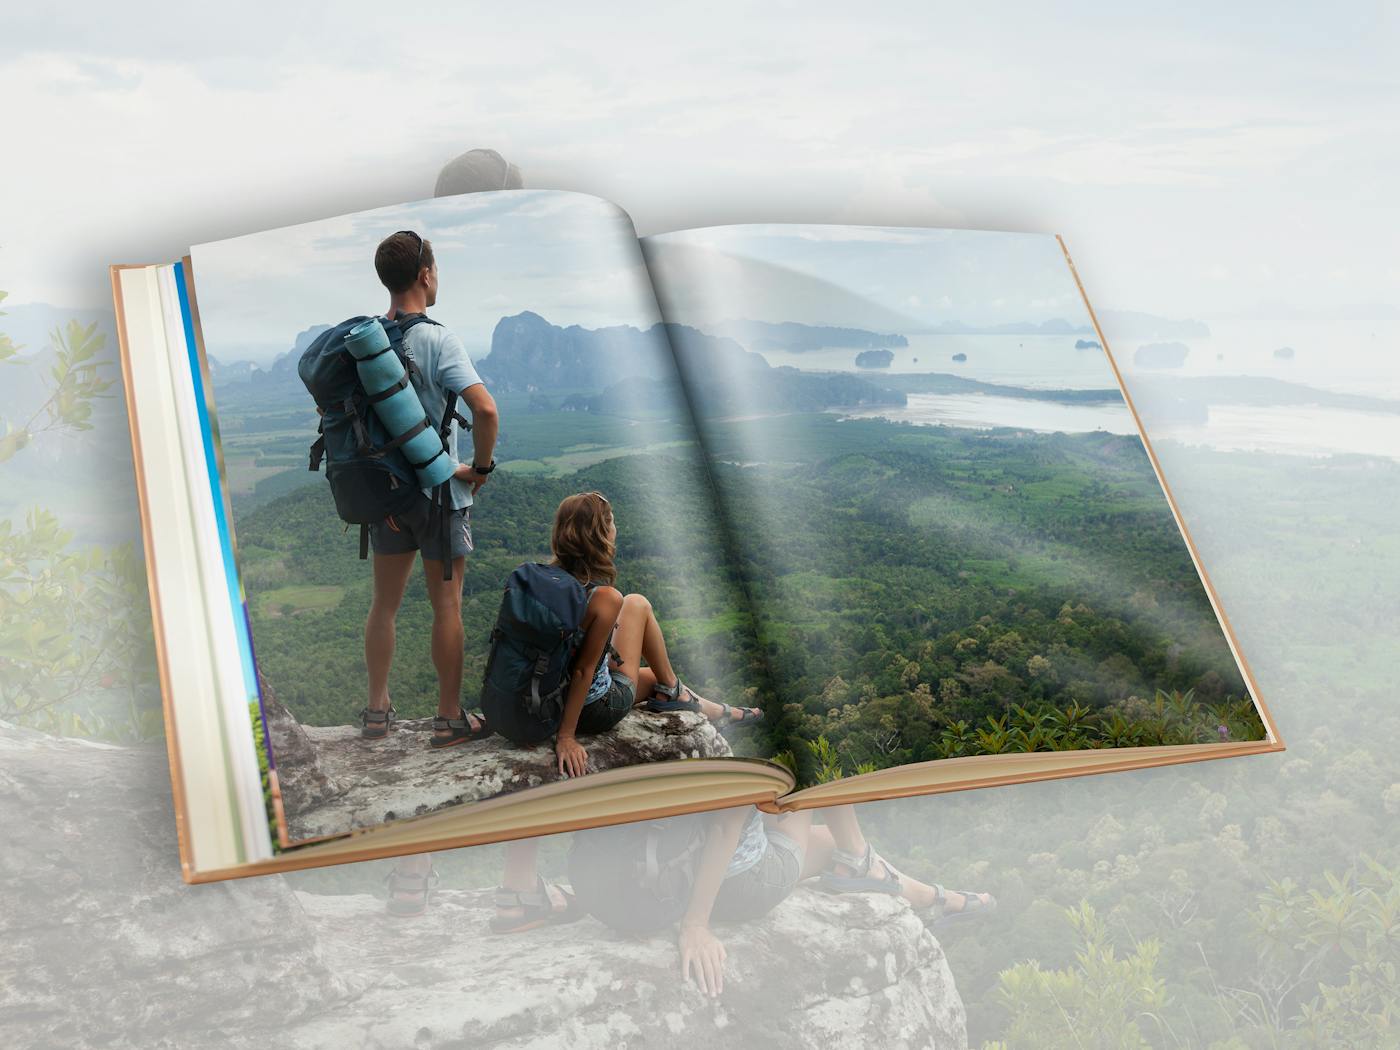 Leg reisherinneringen vast in een fotoboek